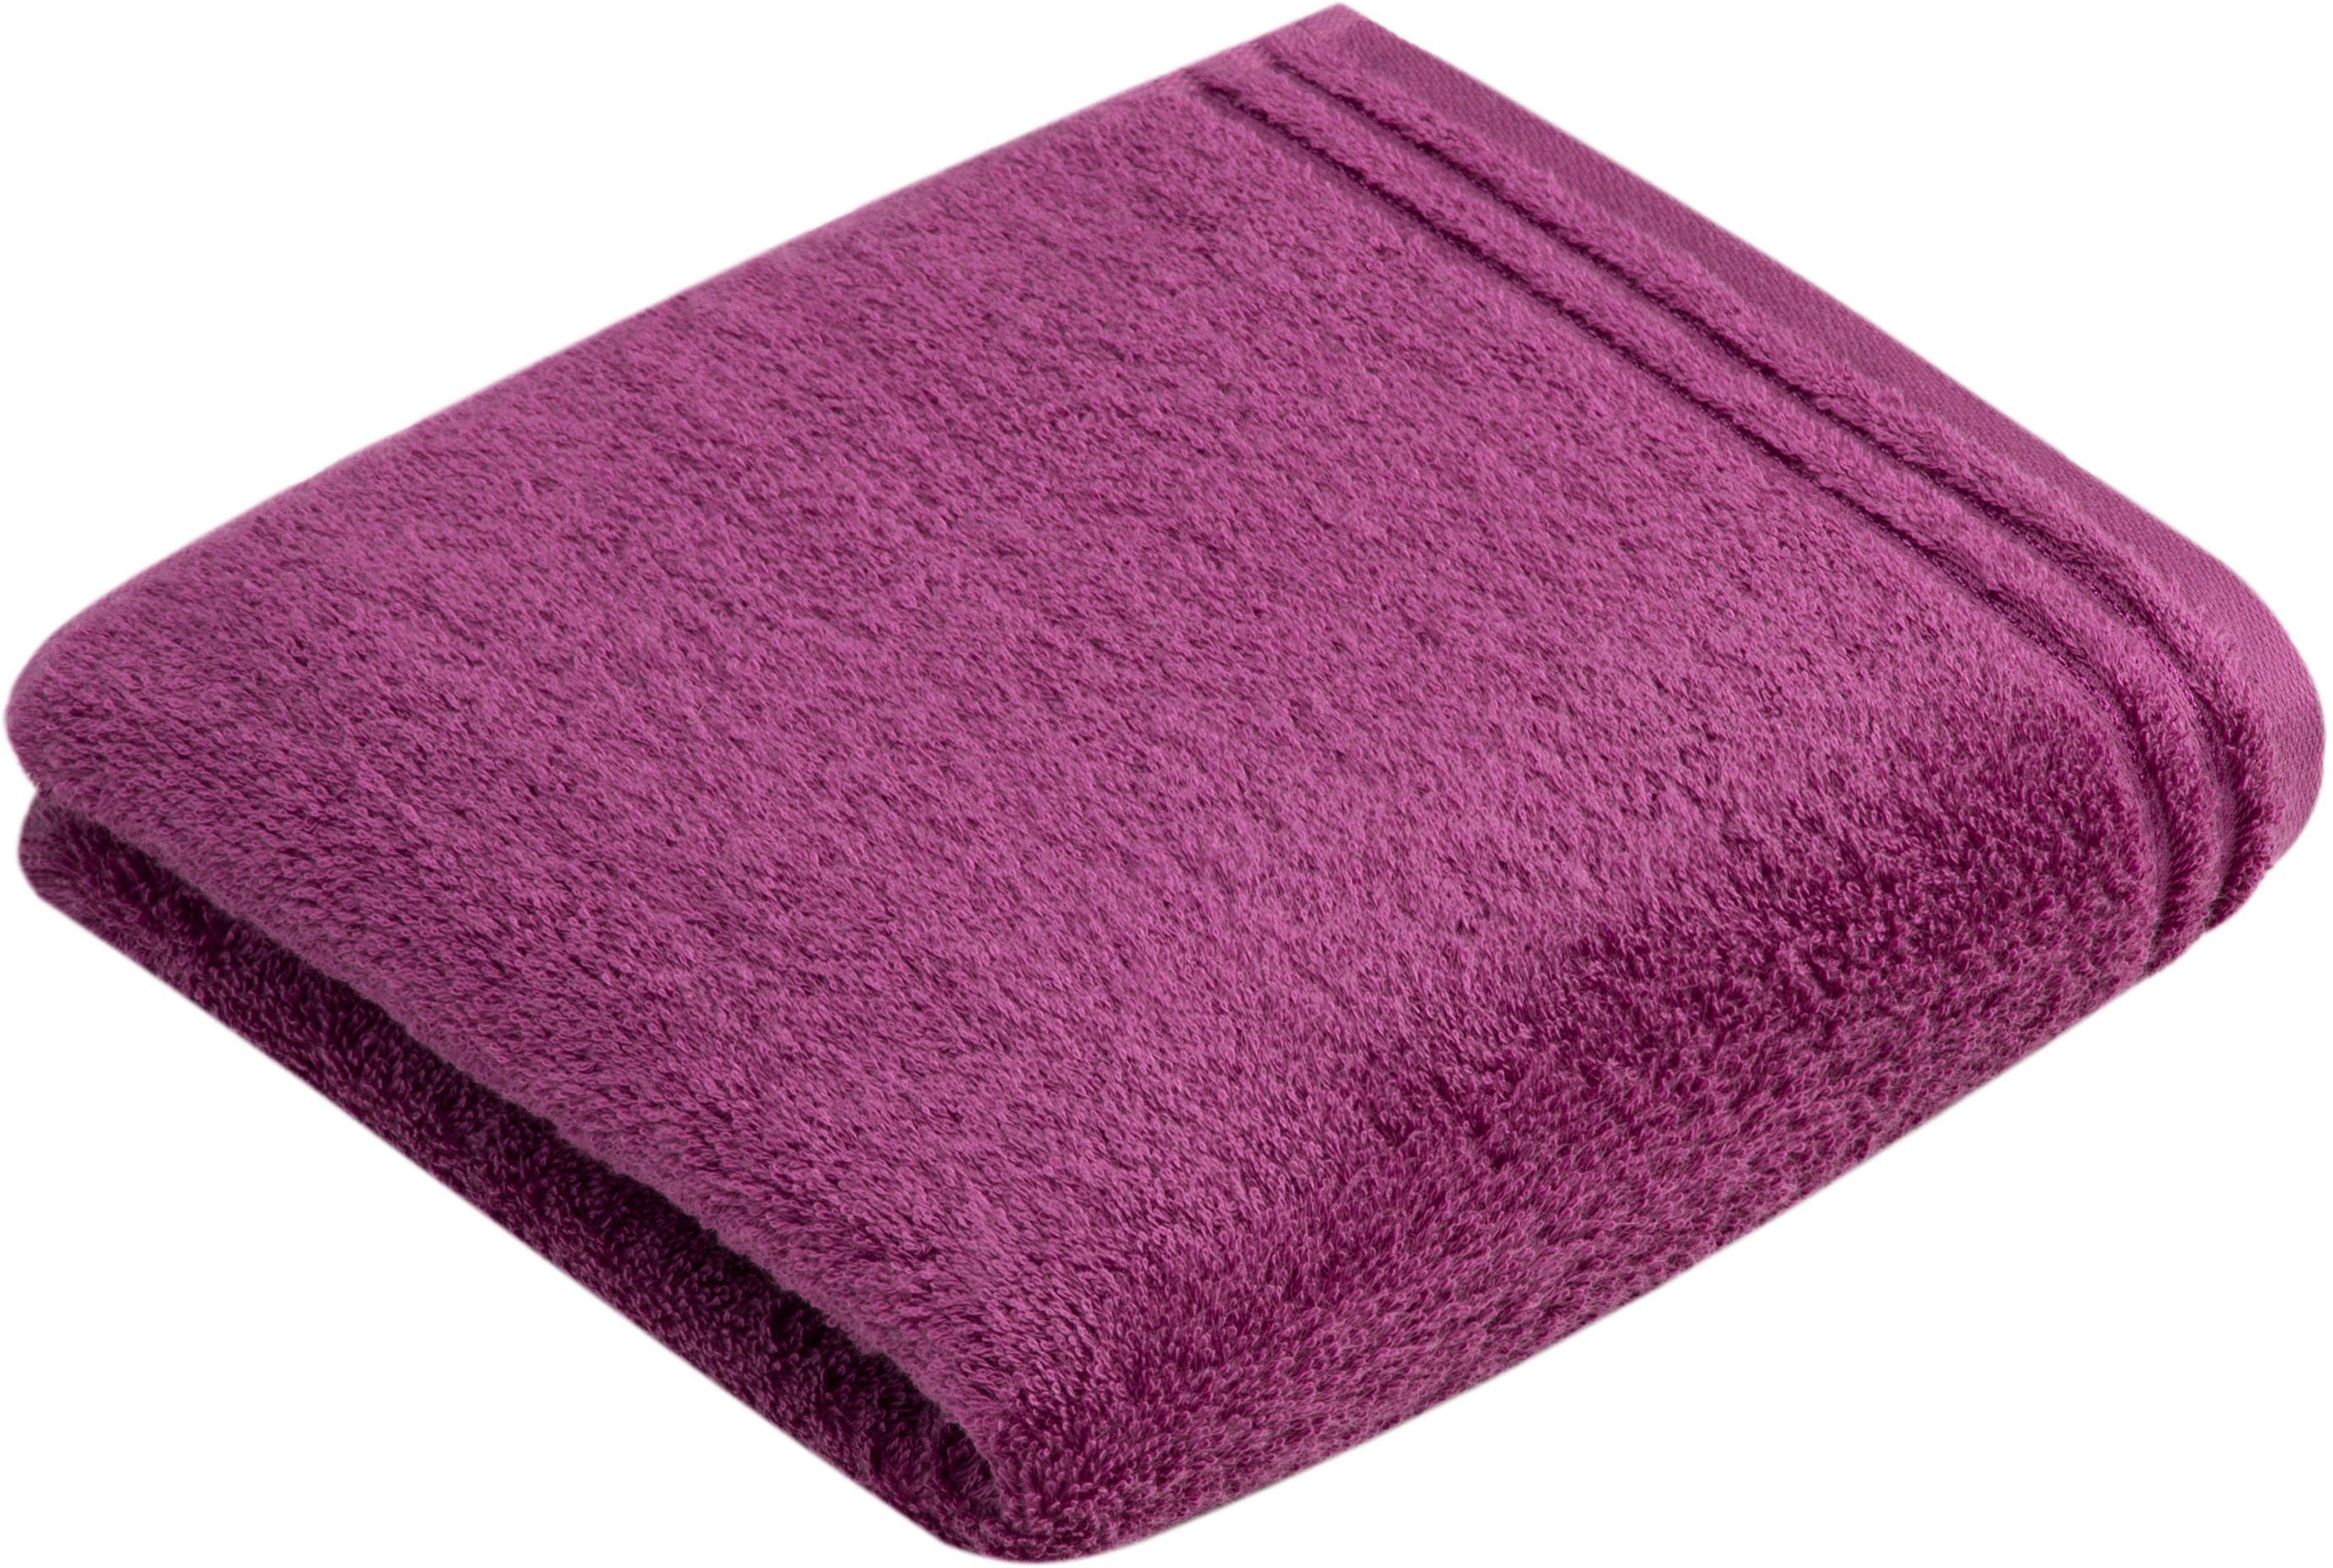 Vossen Badetuch Walkfrottee Calypso Feeling, purple Baumwolle, einfarbig (1-St), 100% schmaler Bordüre, aus hochwerter mit Vegan